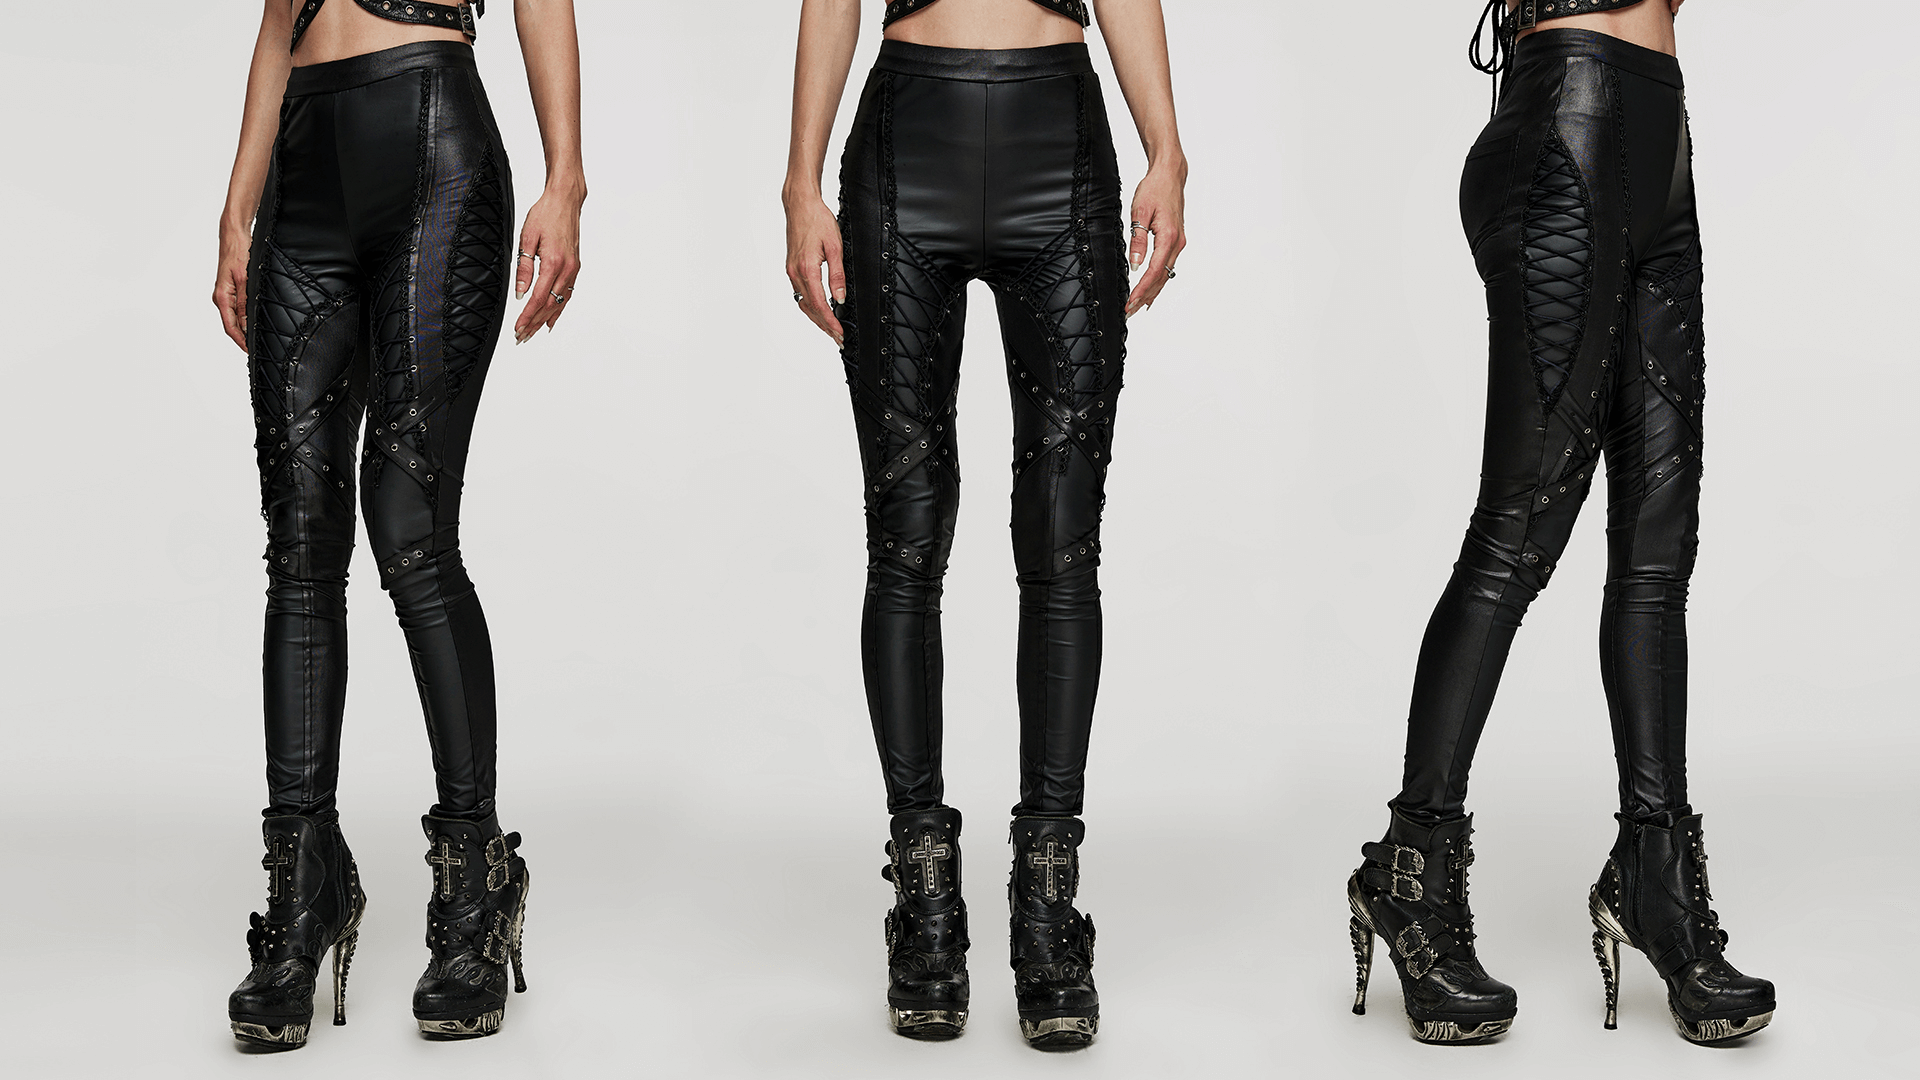 Women's Lace-Up Faux Leather Slim Fit Punk Style Pants